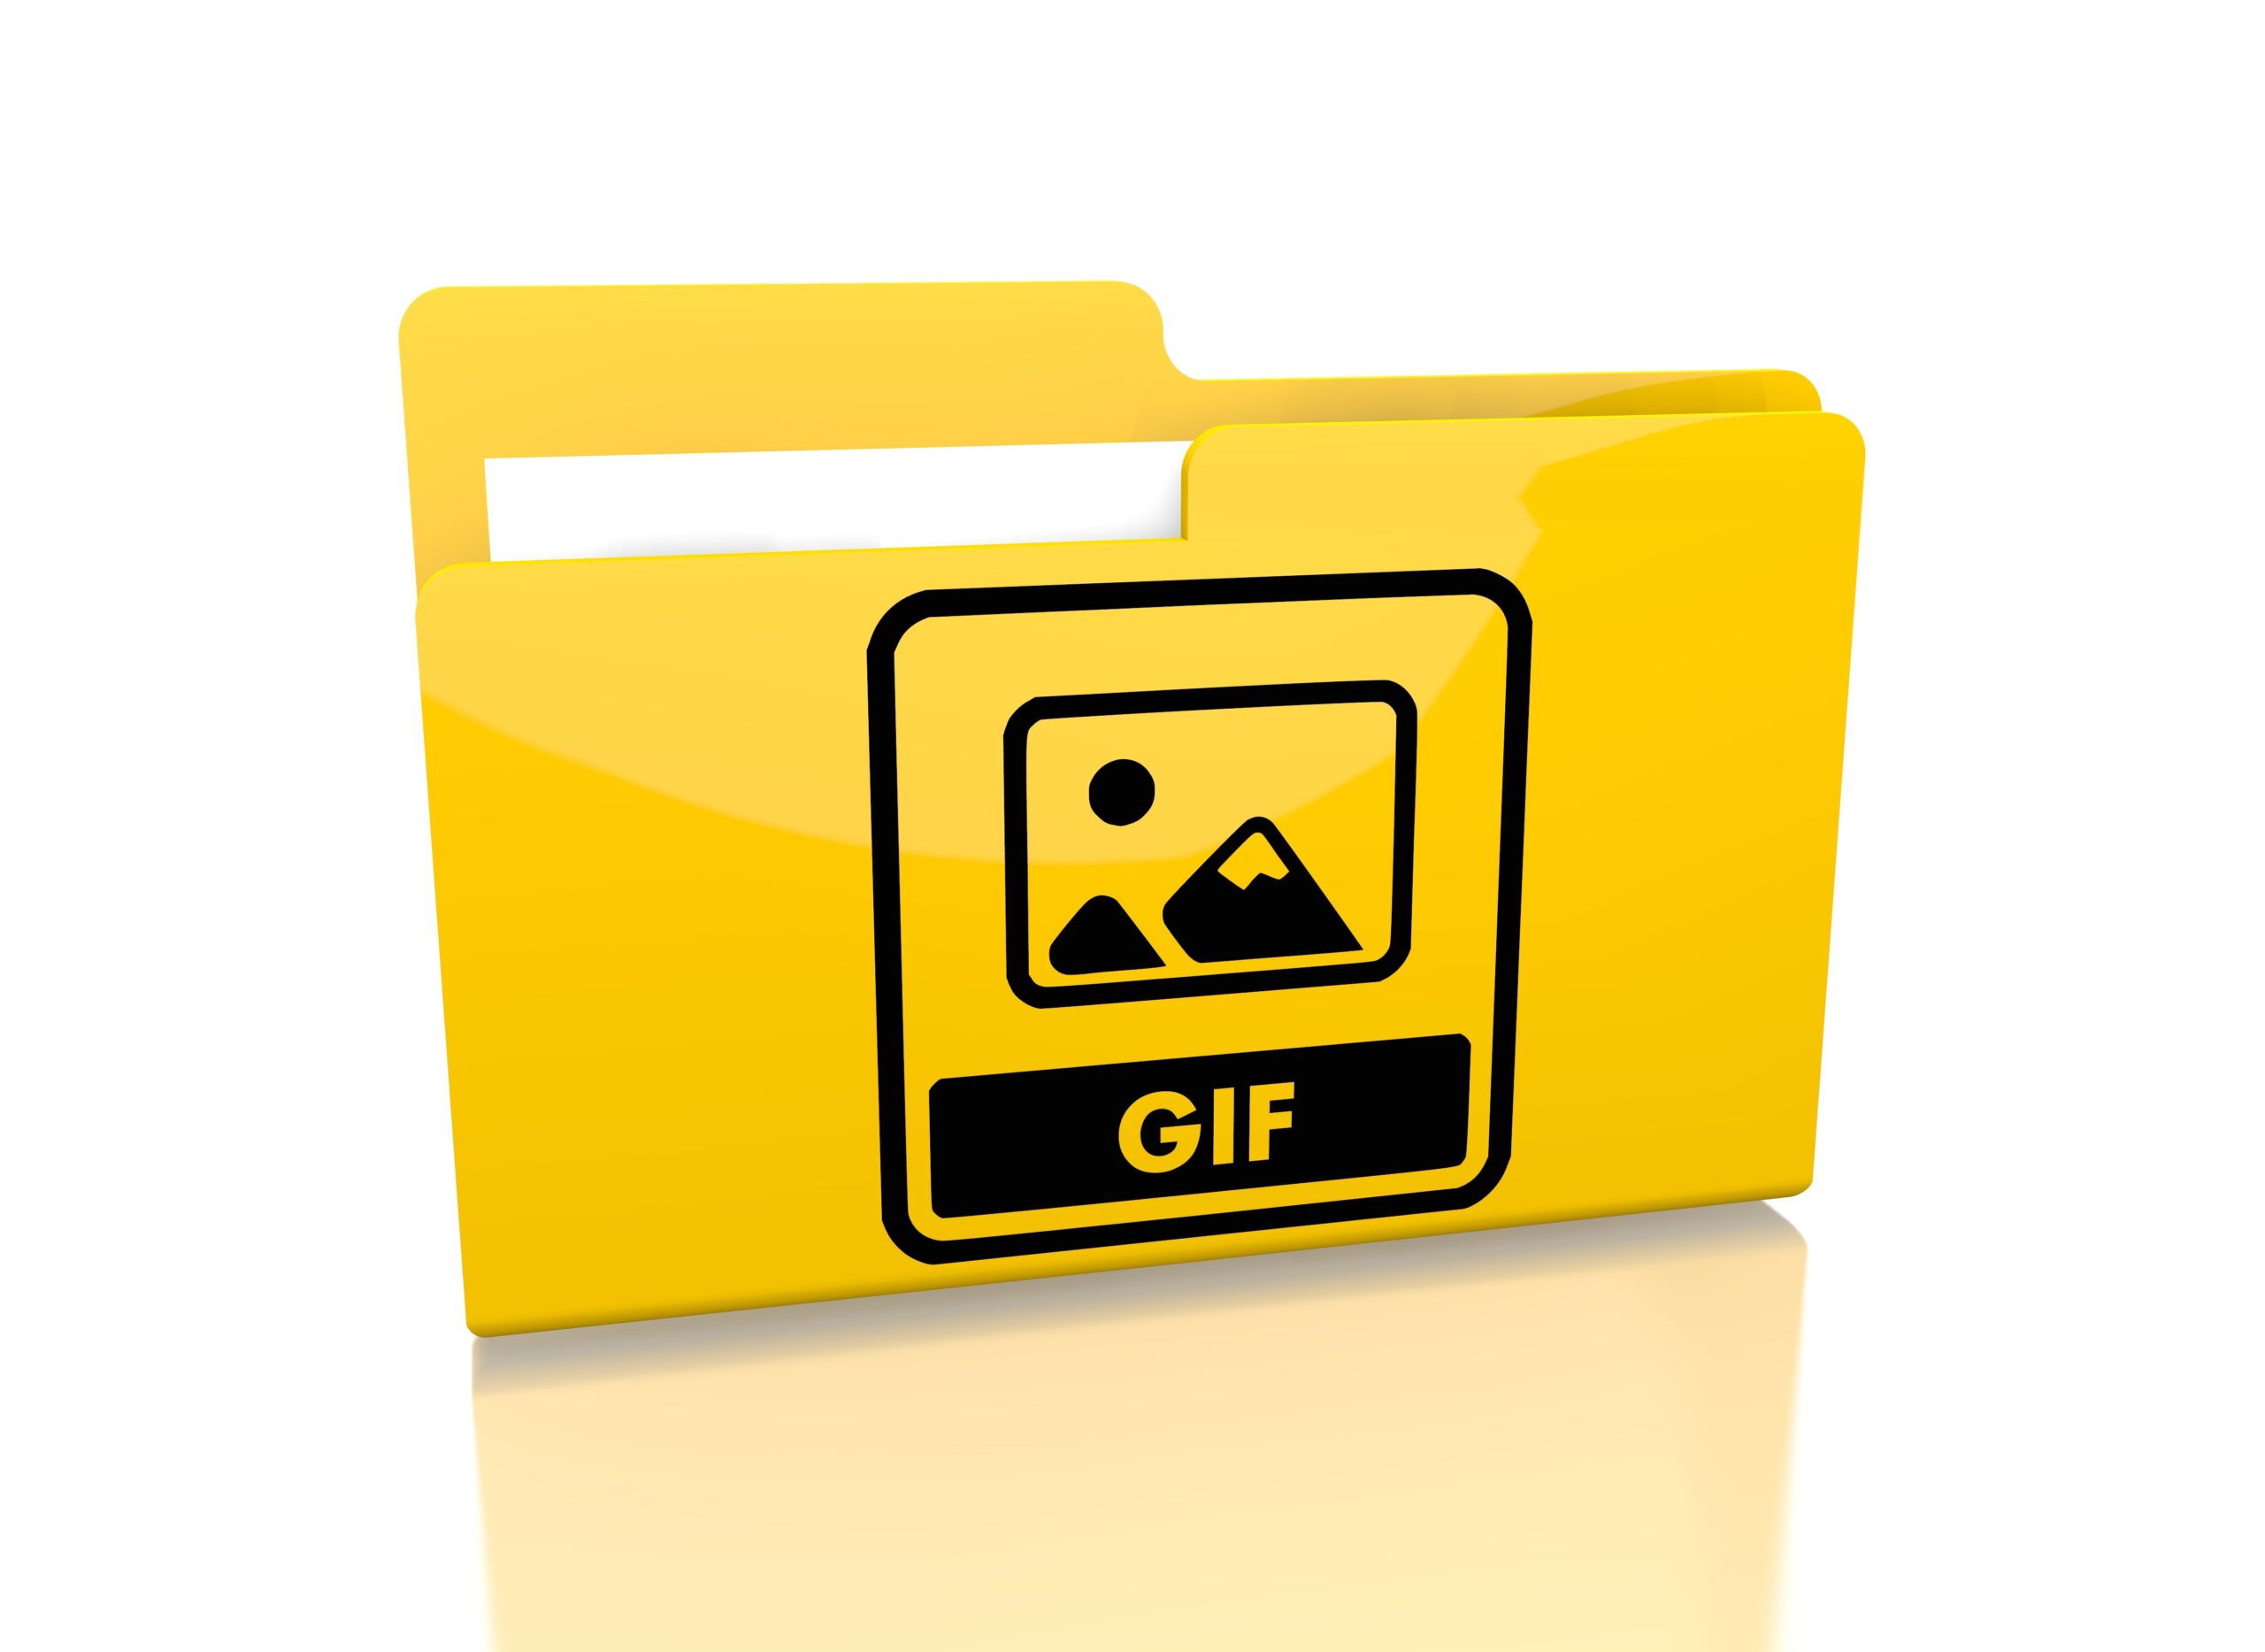 GIFのファイルイメージ